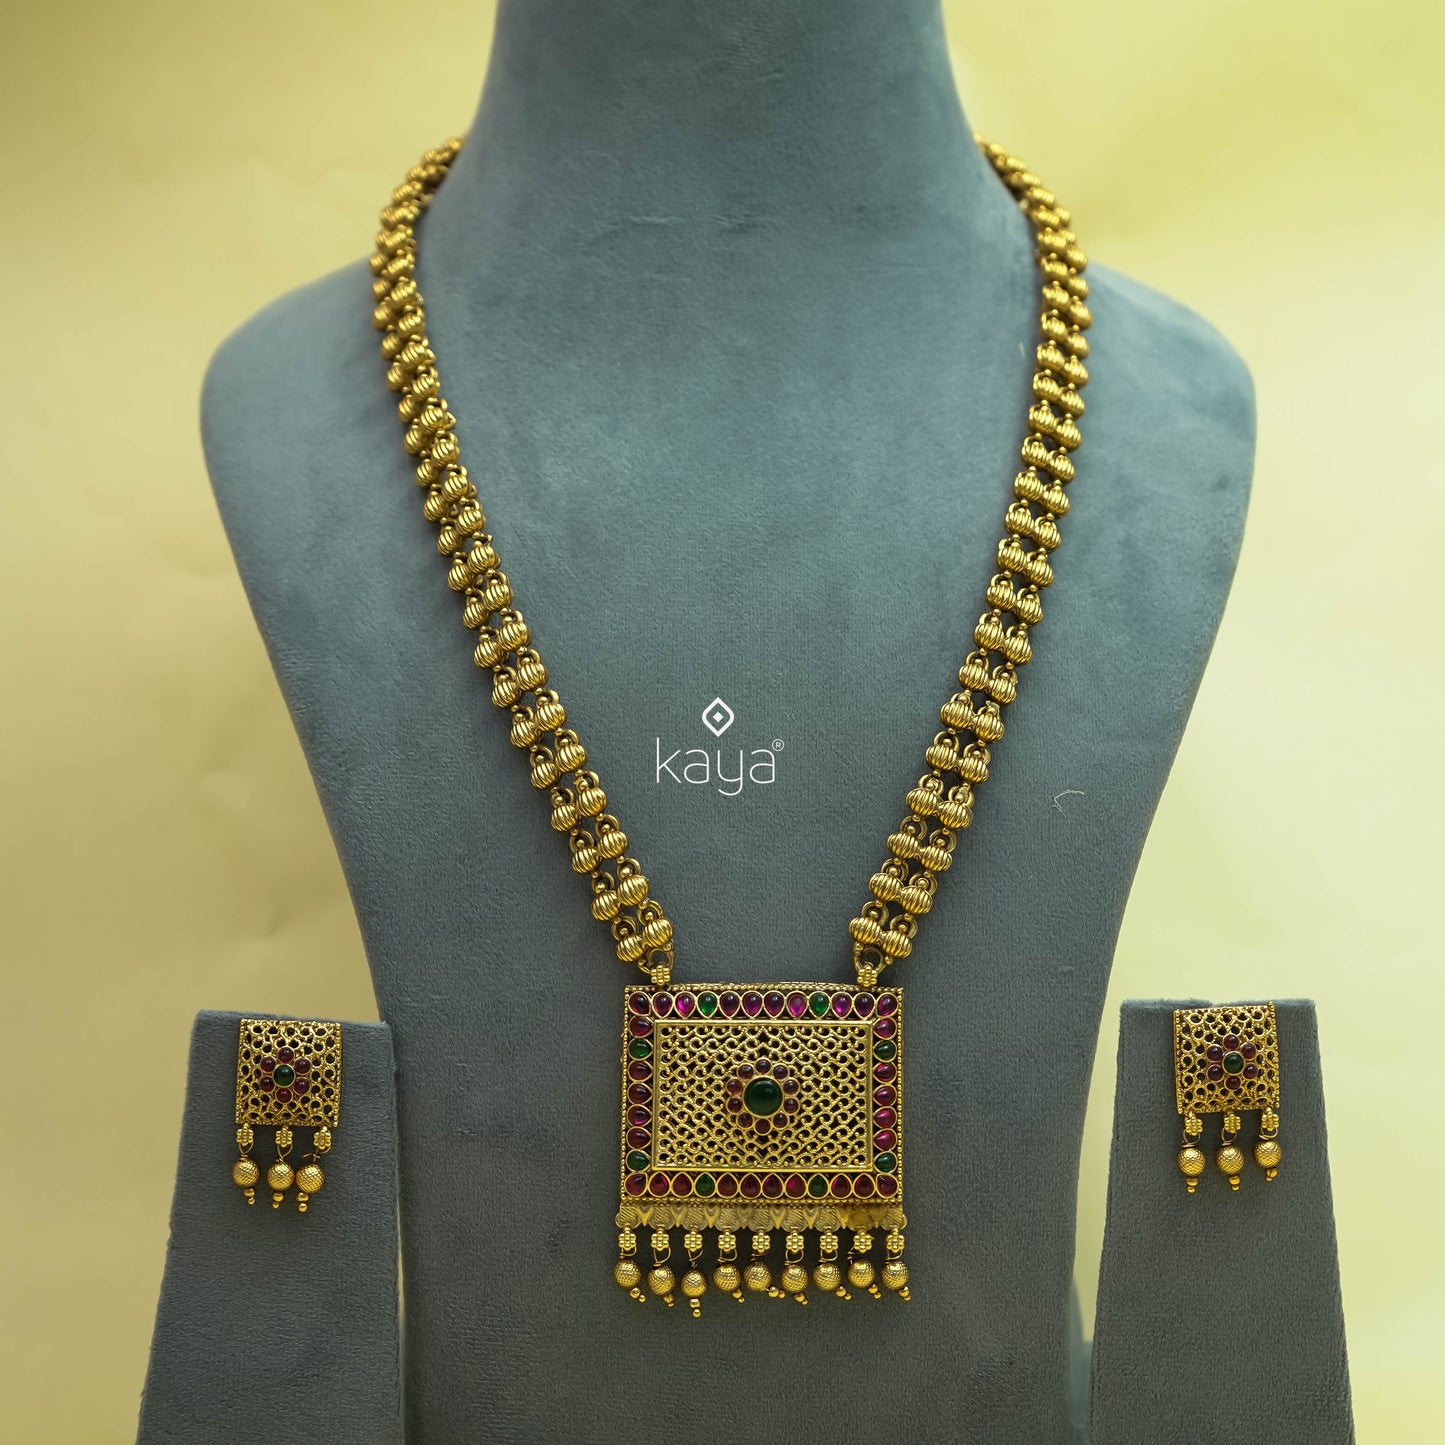 NV101238 - Premium Antique haram Necklace set